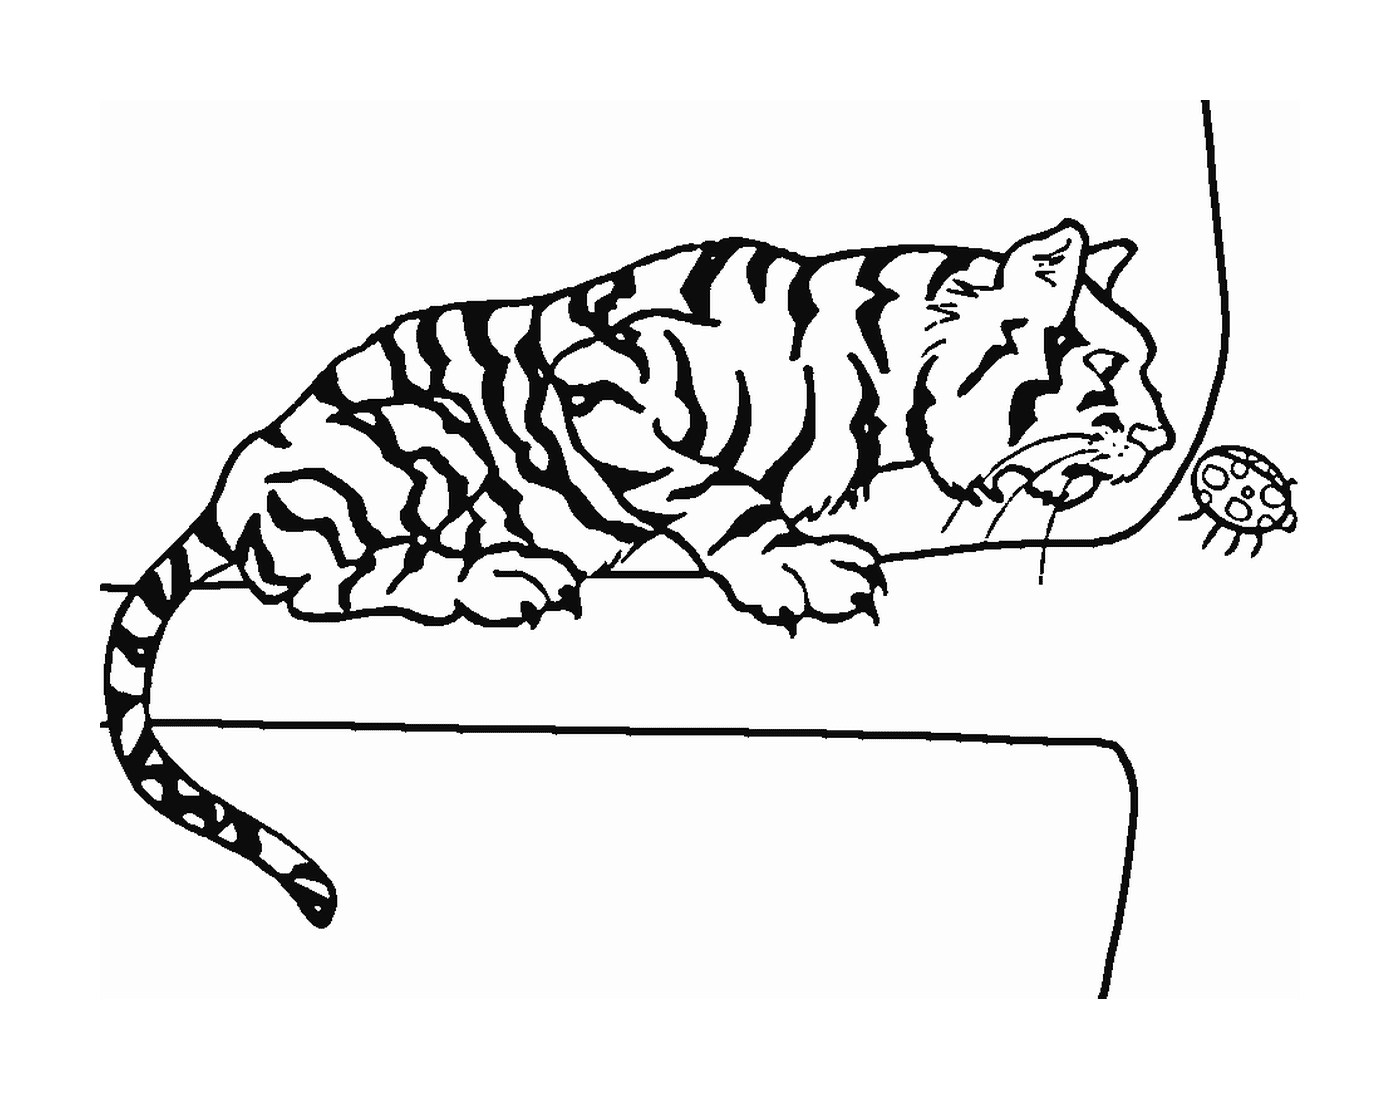  एक औरत के साथ शाखा पर एक बाघ 